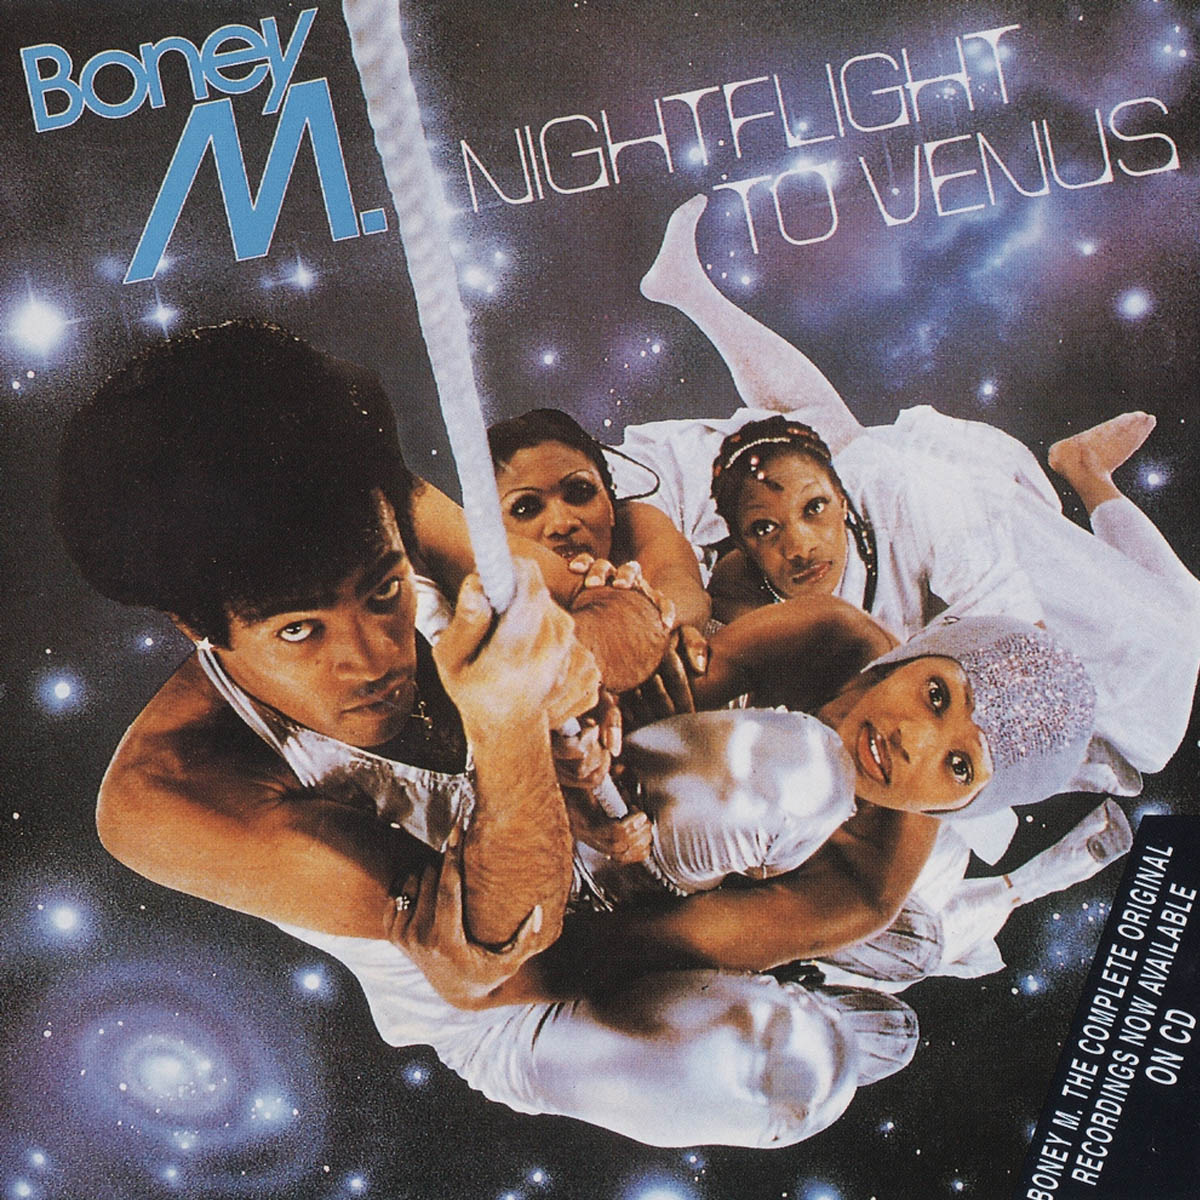 Boney M. 的专辑封面“Nightflight to Venus”（1078）